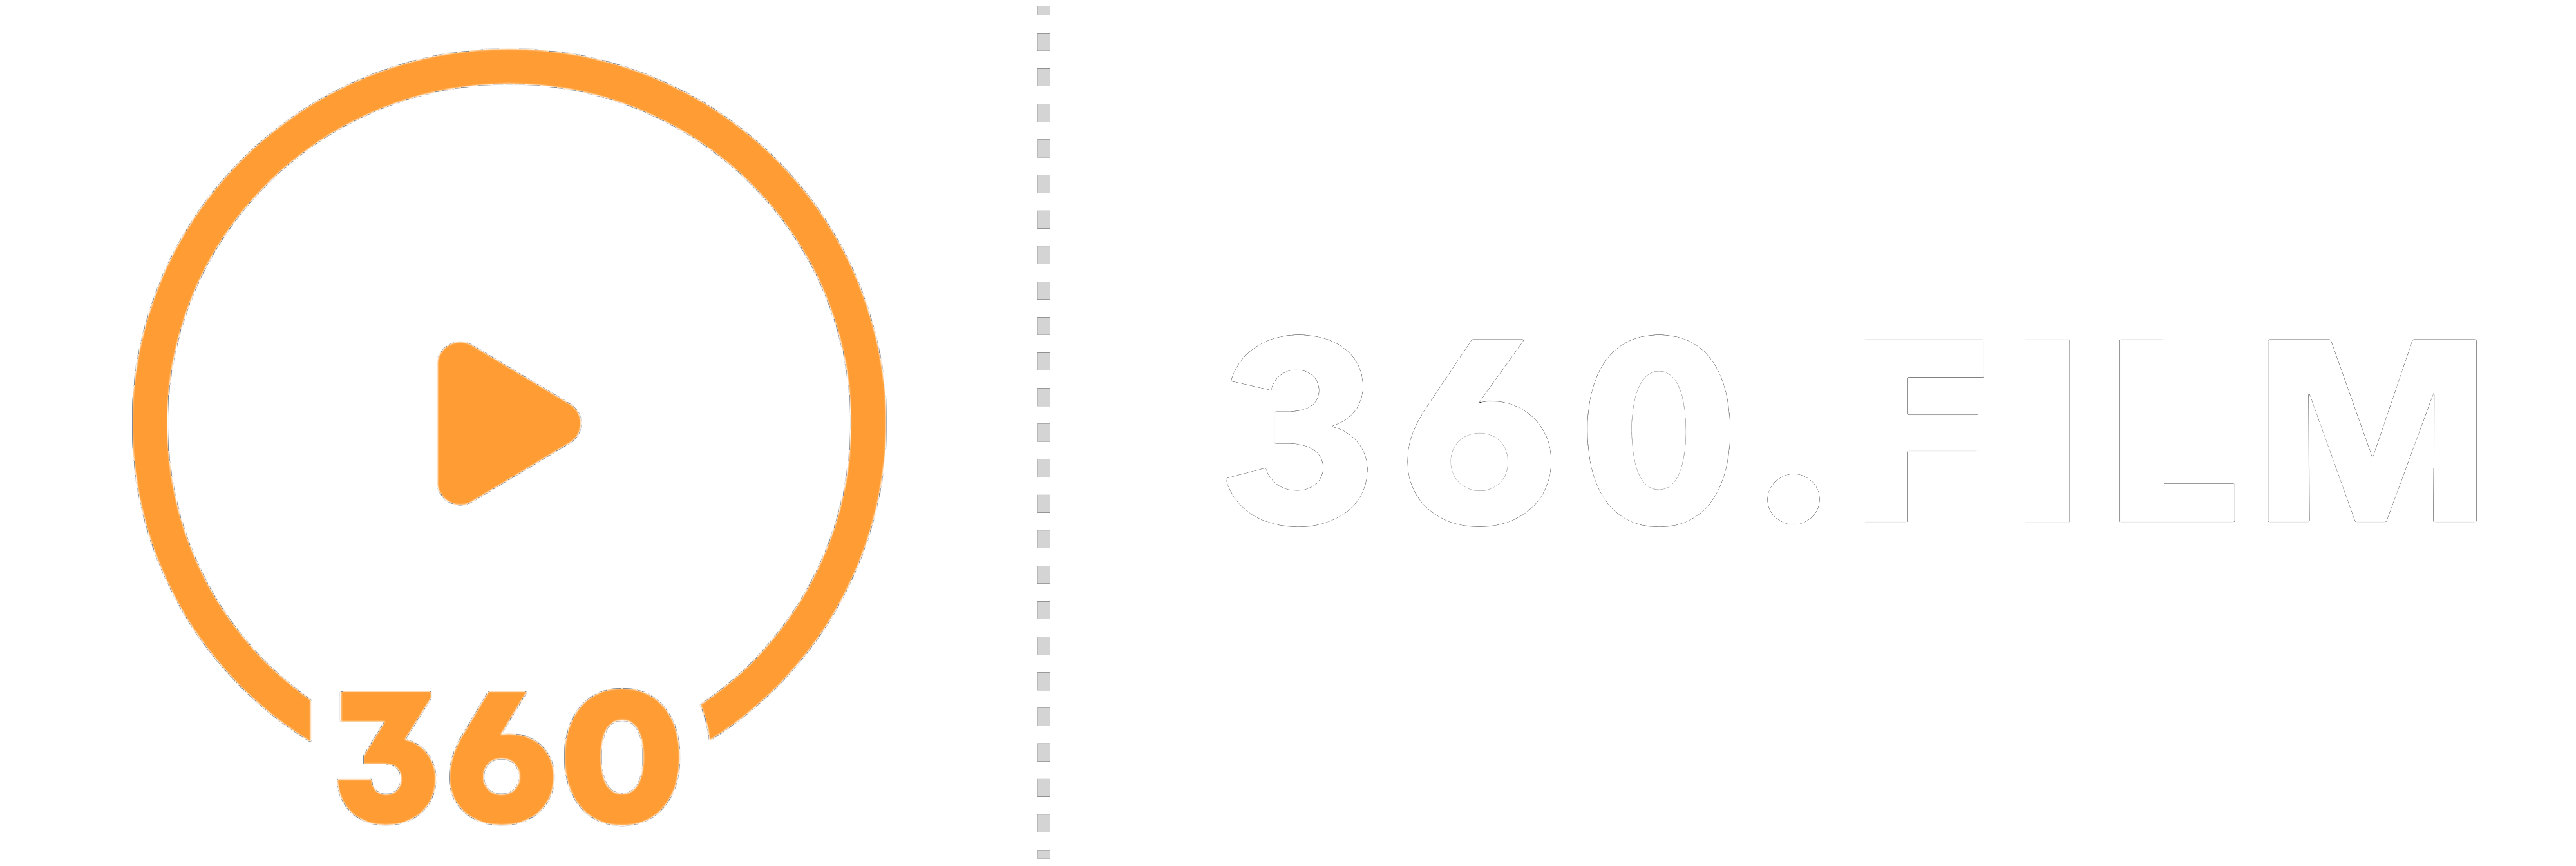 360.FILM